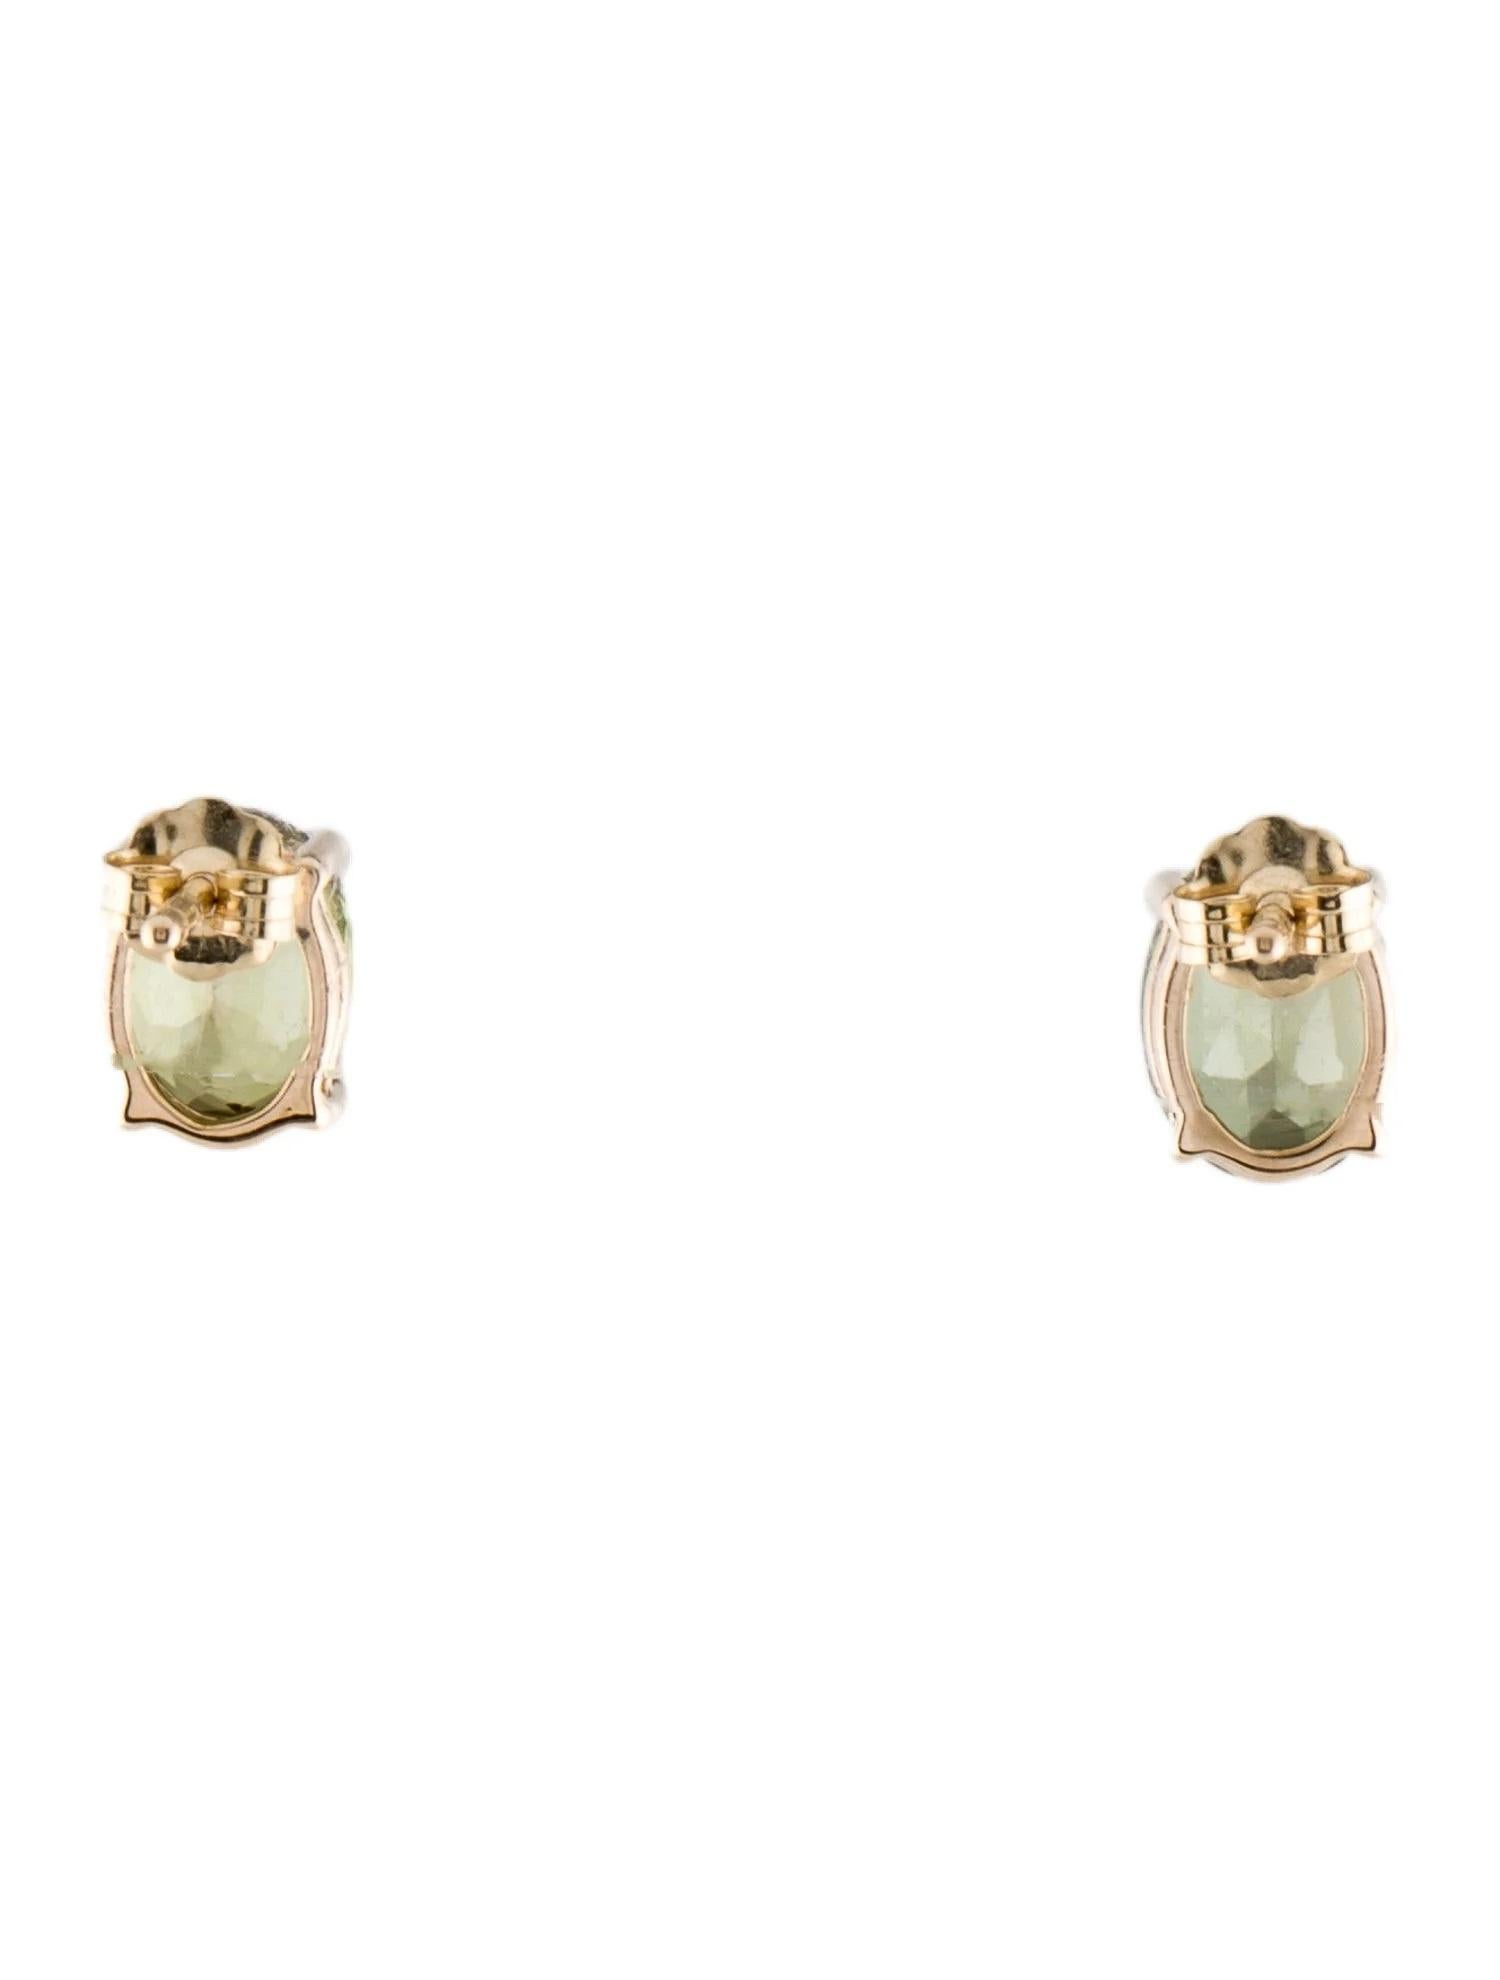 Artist 14K 2.54ctw Tourmaline Stud Earrings  Oval Modified Brilliant Gemstones  Green